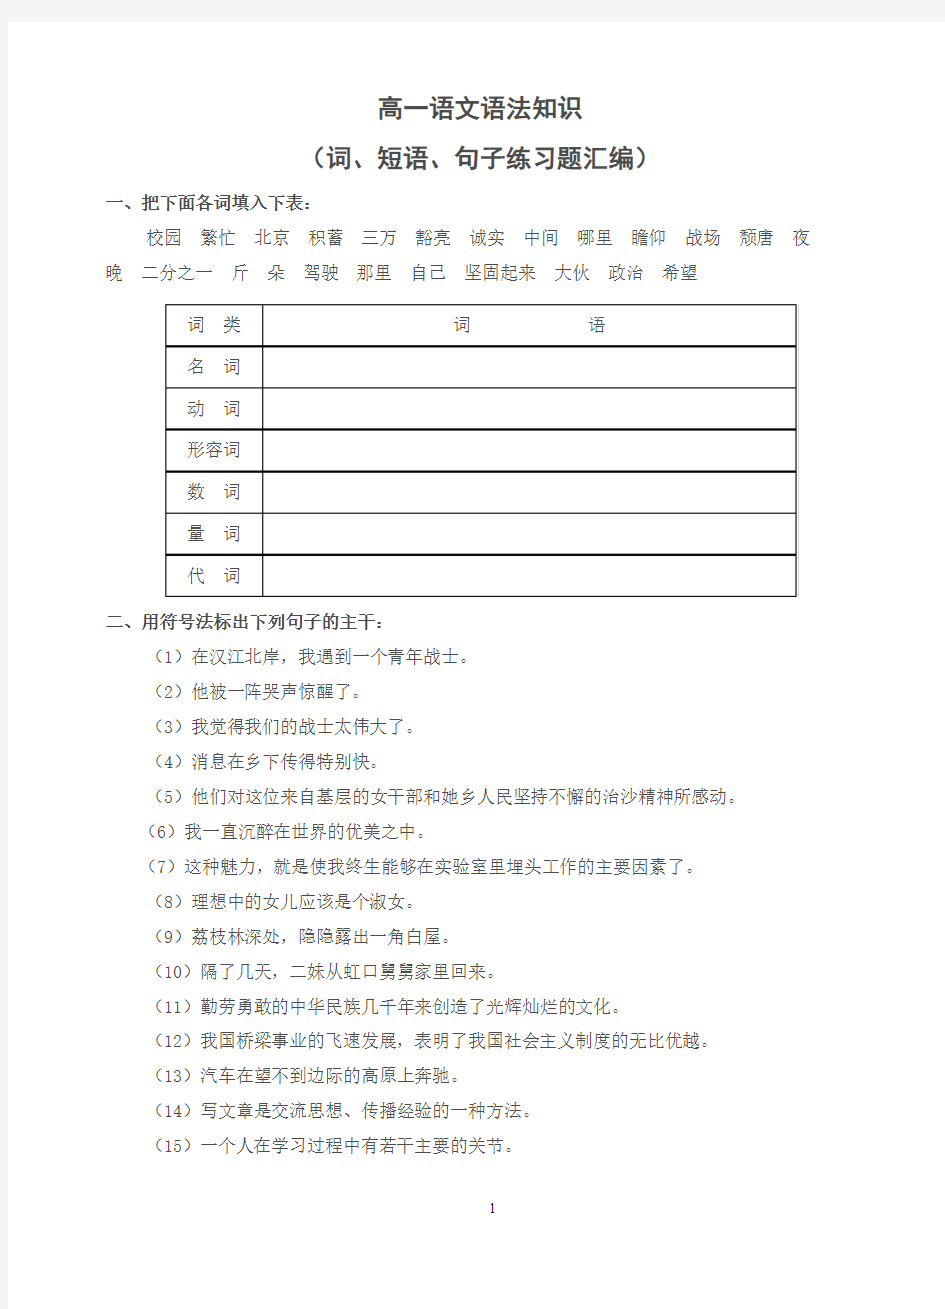 教师版 初中语文语法知识——句子成分划分练习题汇编